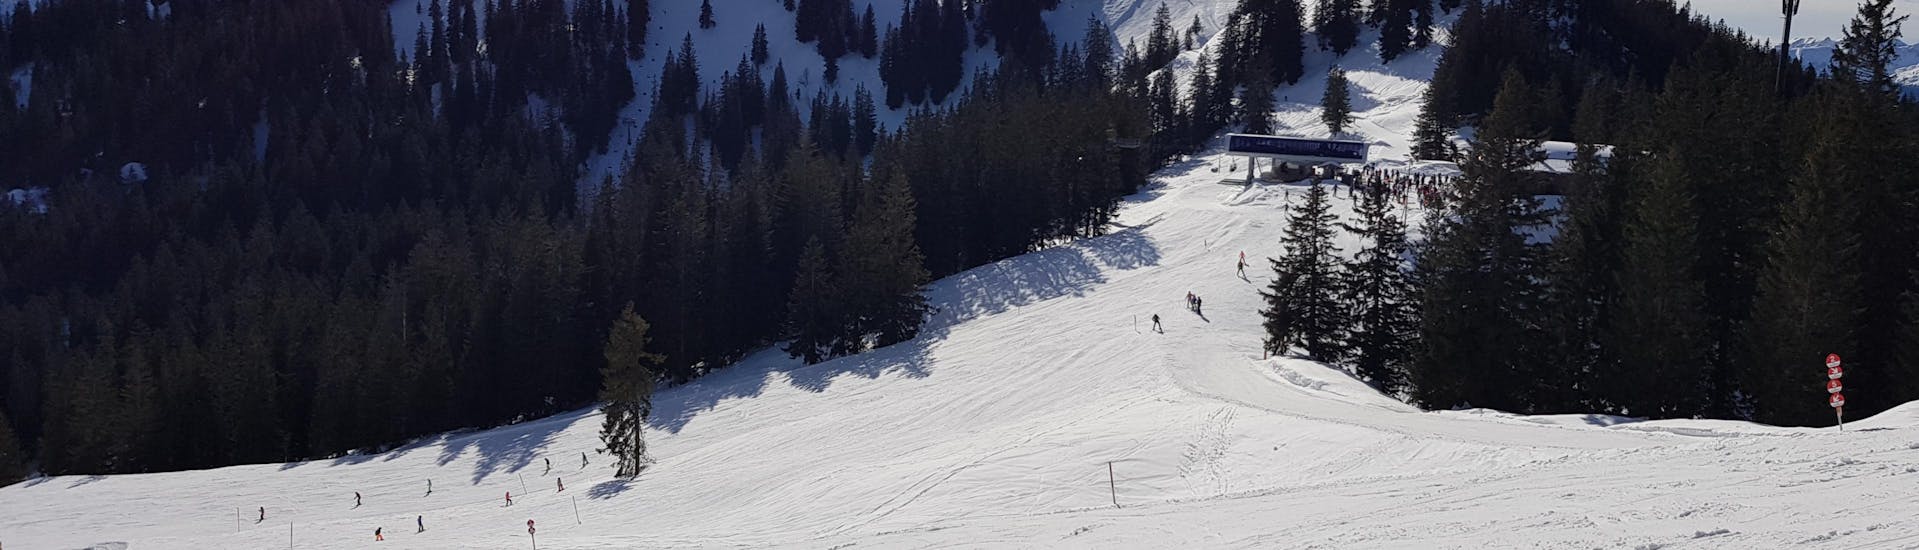 Adultes et enfants skiant dans la station de ski de Spitzingsee.